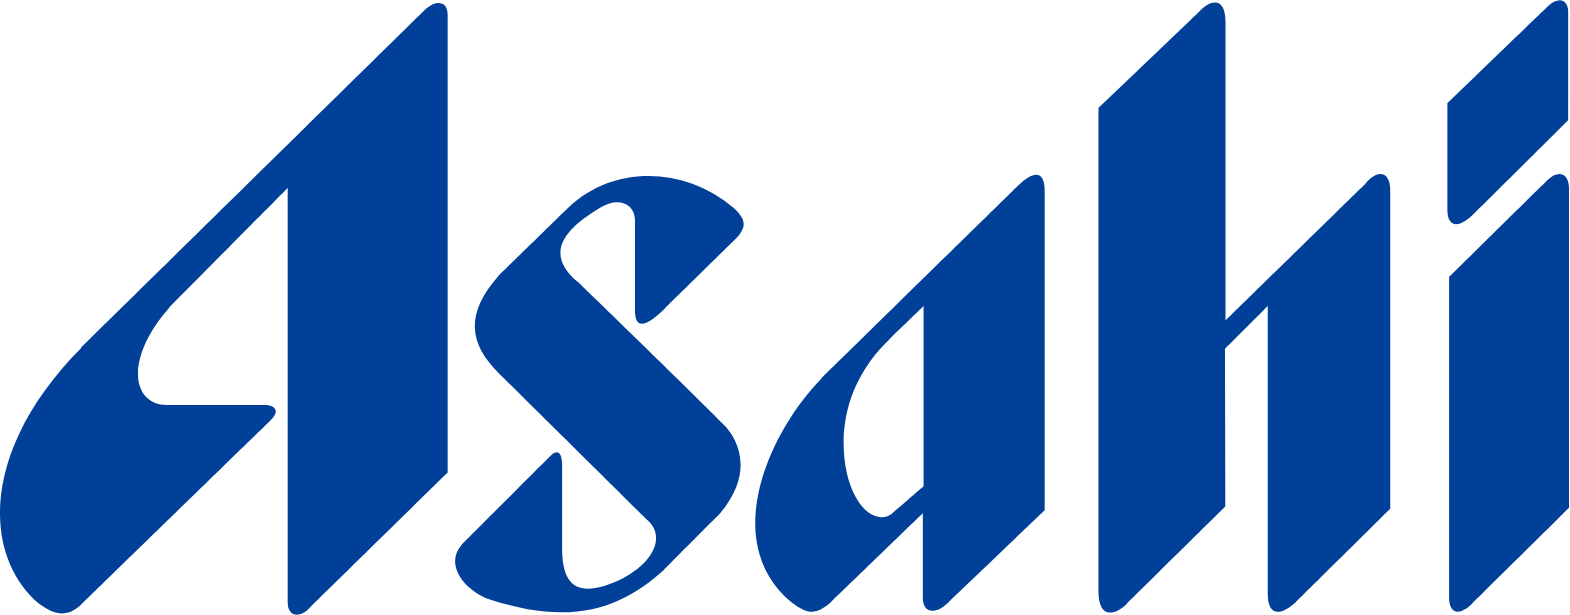 Asahi Group logo large (transparent PNG)